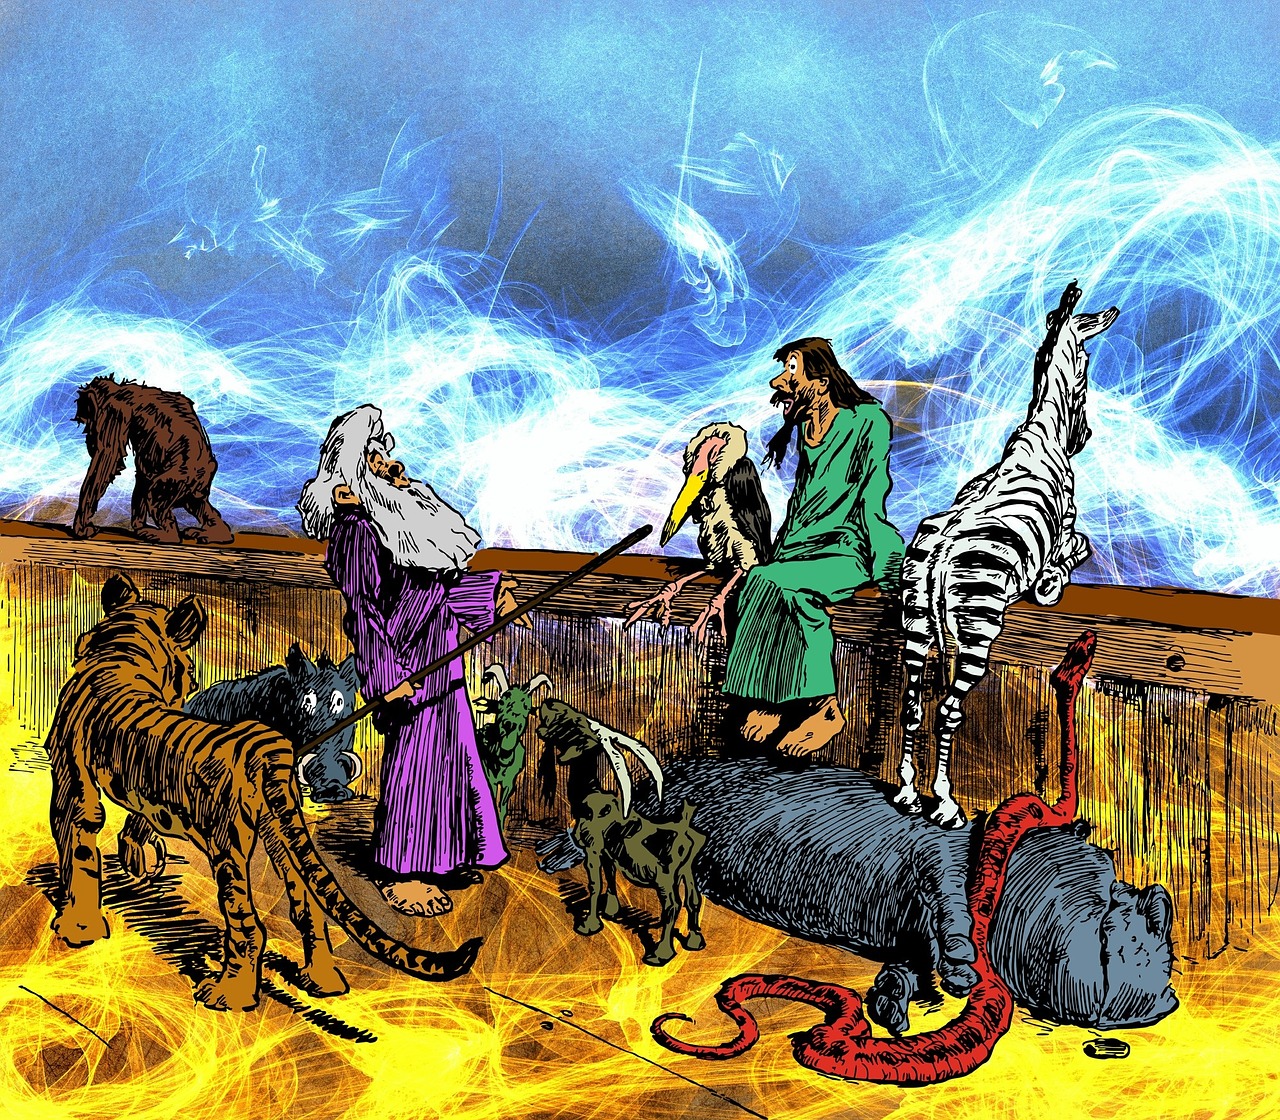 Krikščionis, Krikščionybė, Religija, Religinis, Tikėjimas, Noah, Arka, Nojaus Arka, Gyvūnai, Valtis